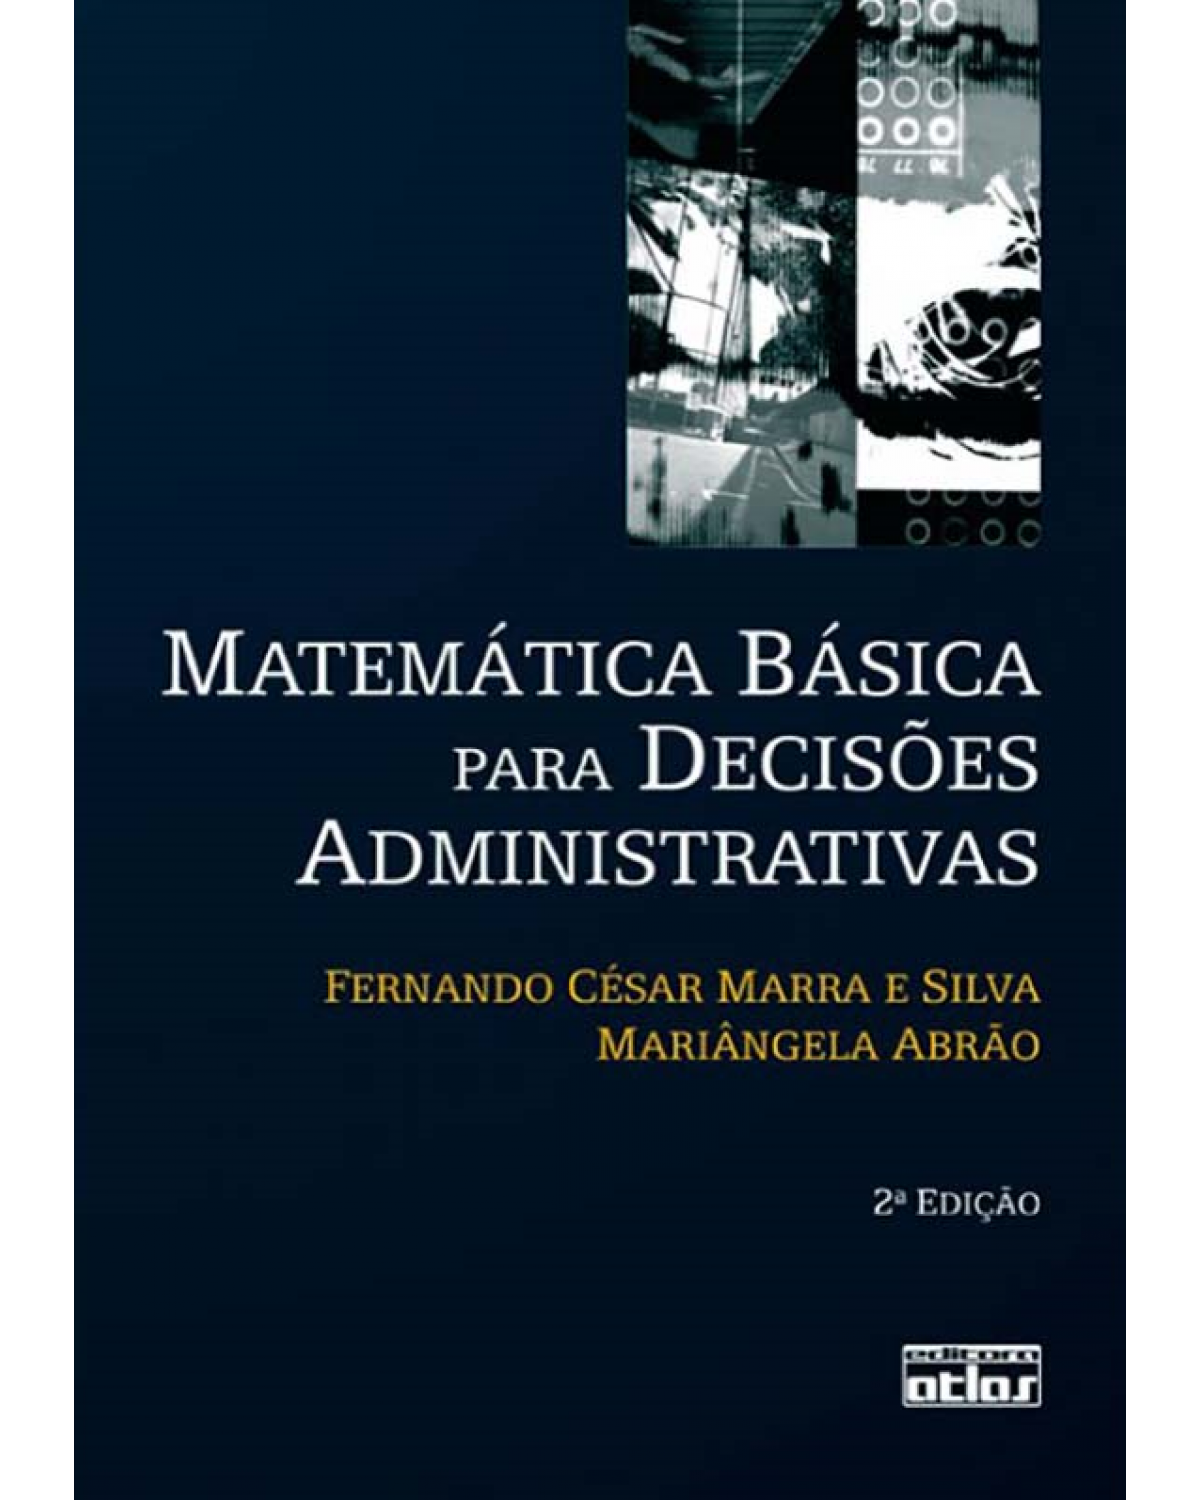 Matemática básica para decisões administrativas - 2ª Edição | 2008